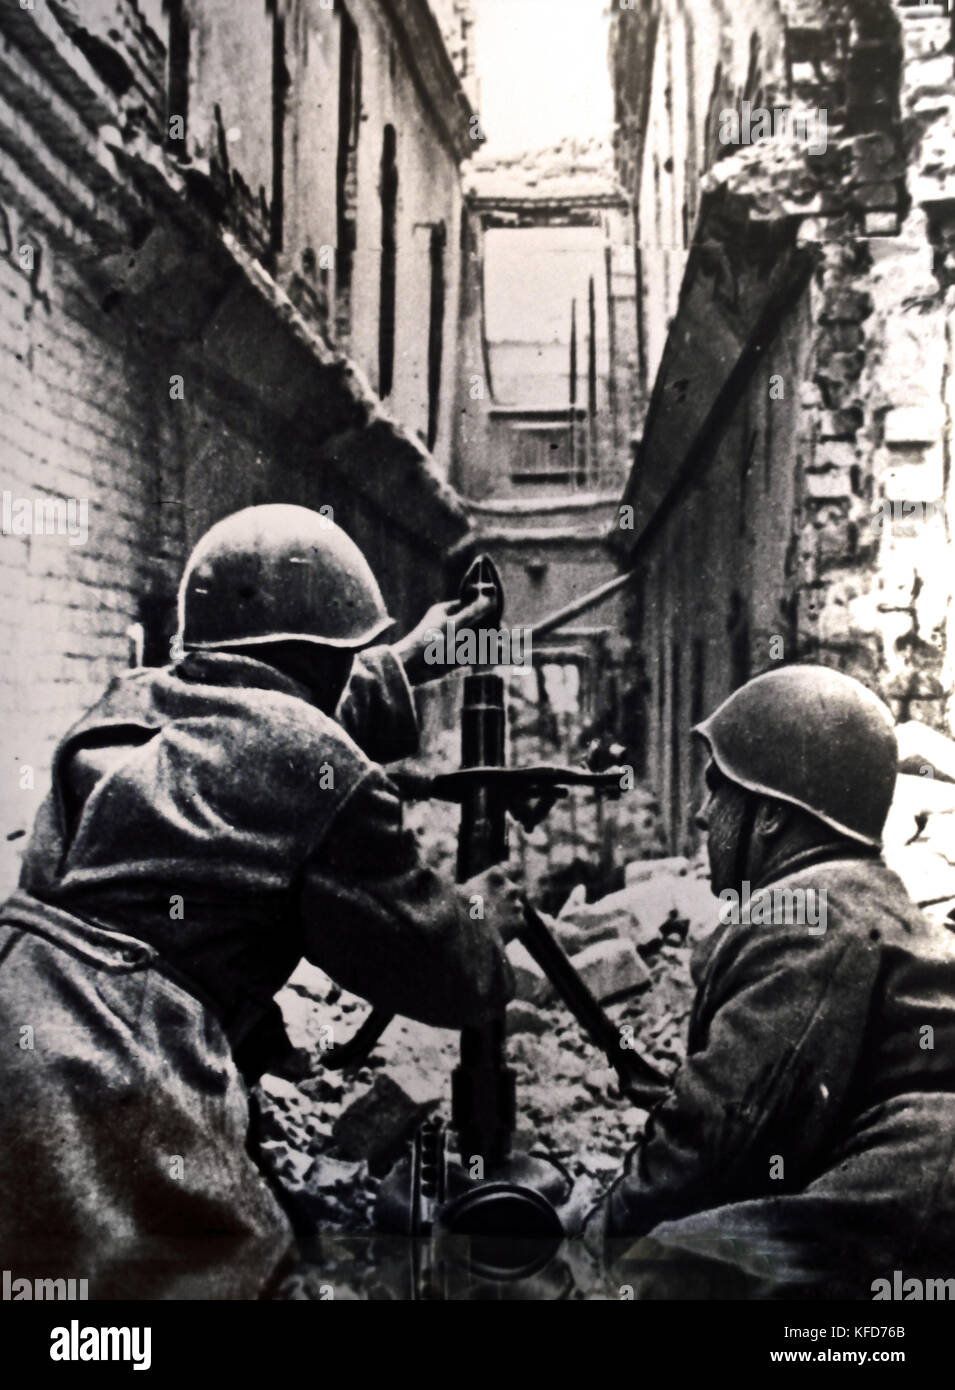 Les combats dans les rues de Stalingrad un mortier soviétique en action ( Guerre Mondiale la bataille de Stalingrad 1942 -1943 a été une grande bataille de la Seconde Guerre mondiale dans laquelle l'Allemagne nazie et ses alliés ont combattu l'Union soviétique pour le contrôle de la ville de Stalingrad ) Banque D'Images